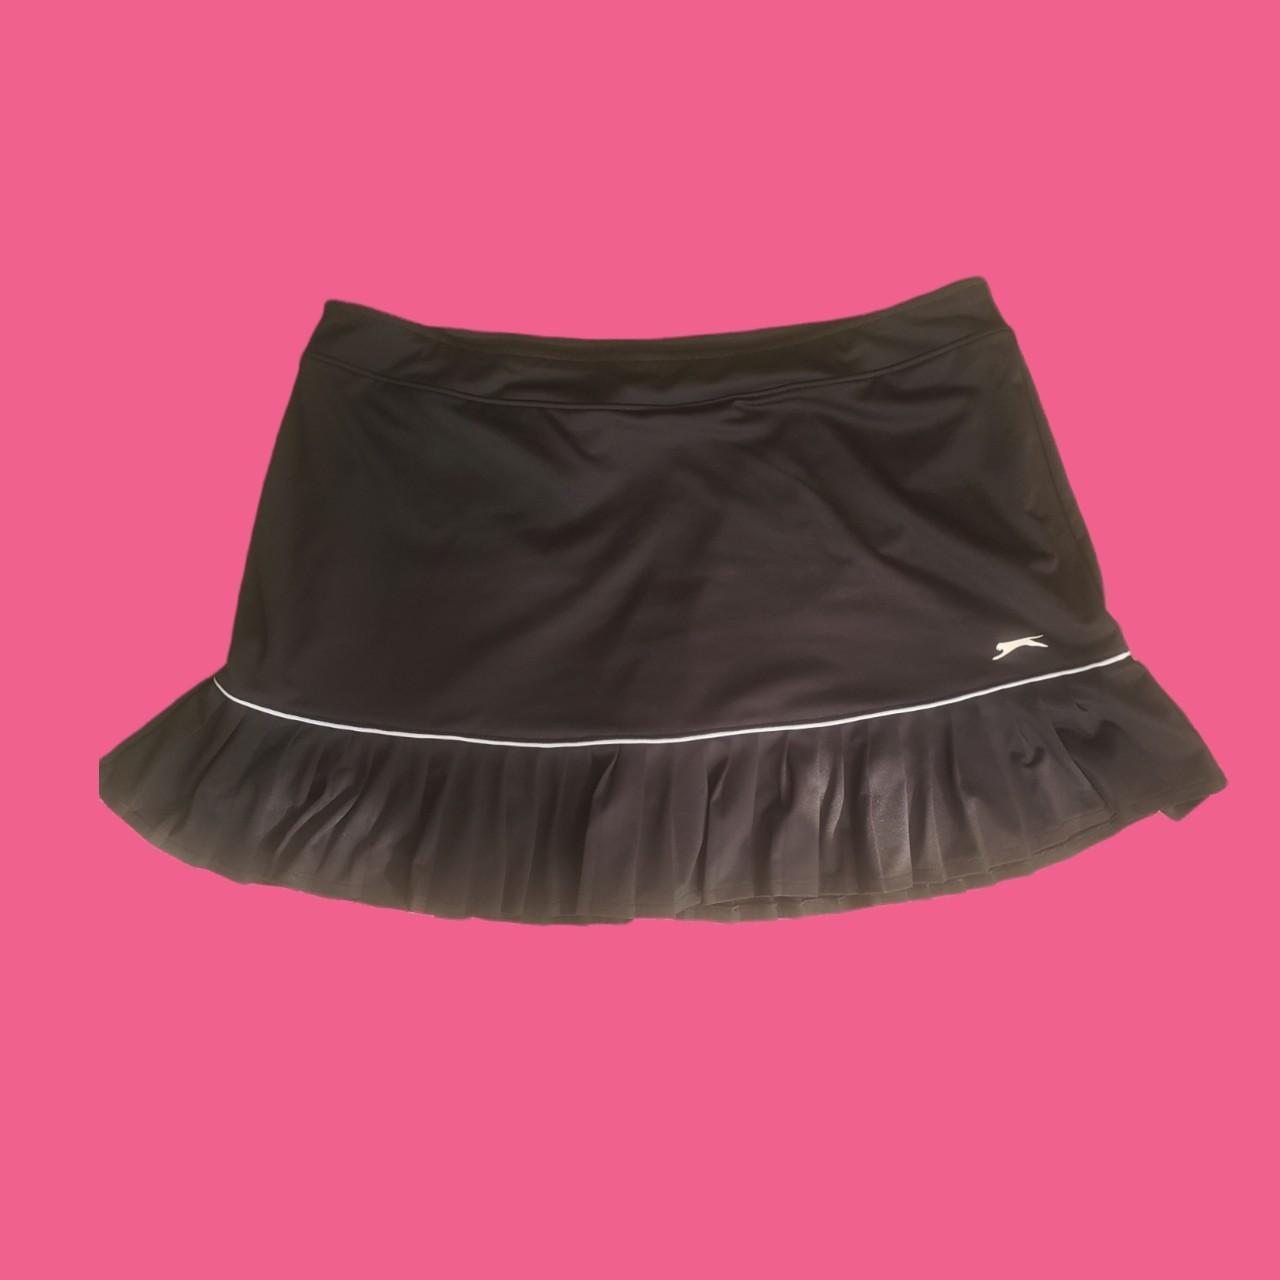 Slazenger Women's Black Skirt